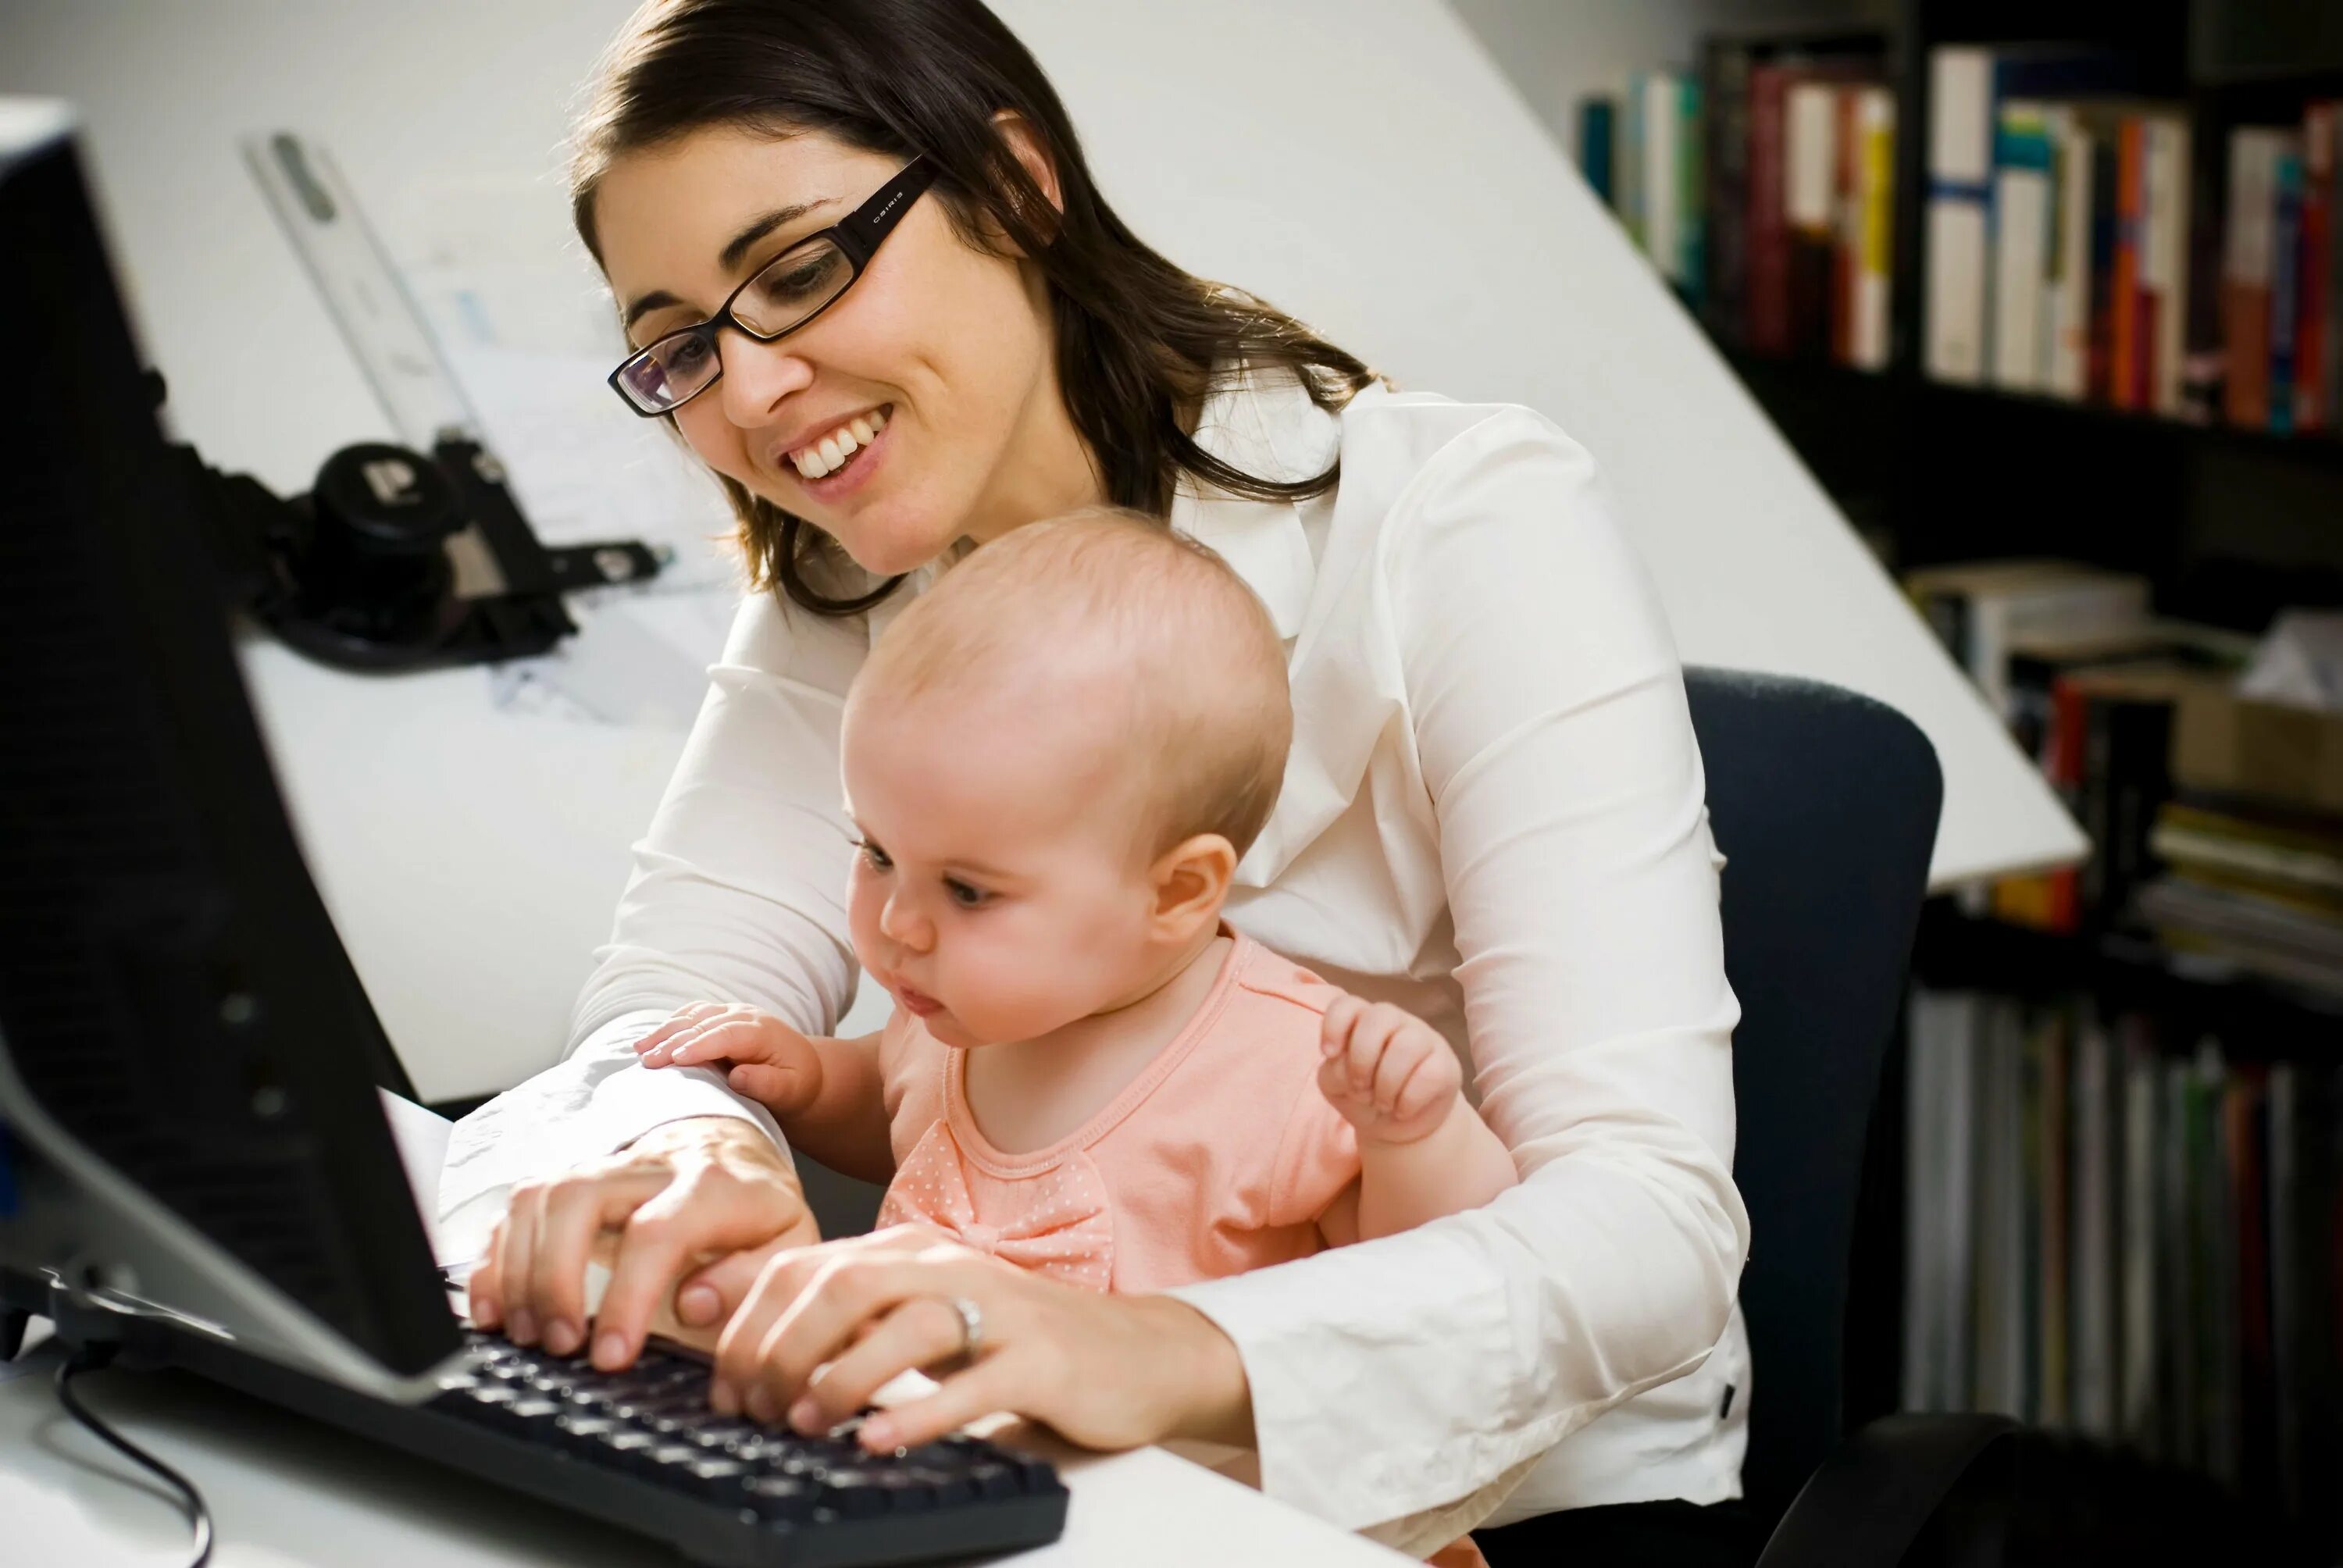 Молодые мамы москвы. Мама в декрете. Женщина с ребенком у компьютера. Мама с ребенком у компьютера. Девушка с ребенком за компьютером.